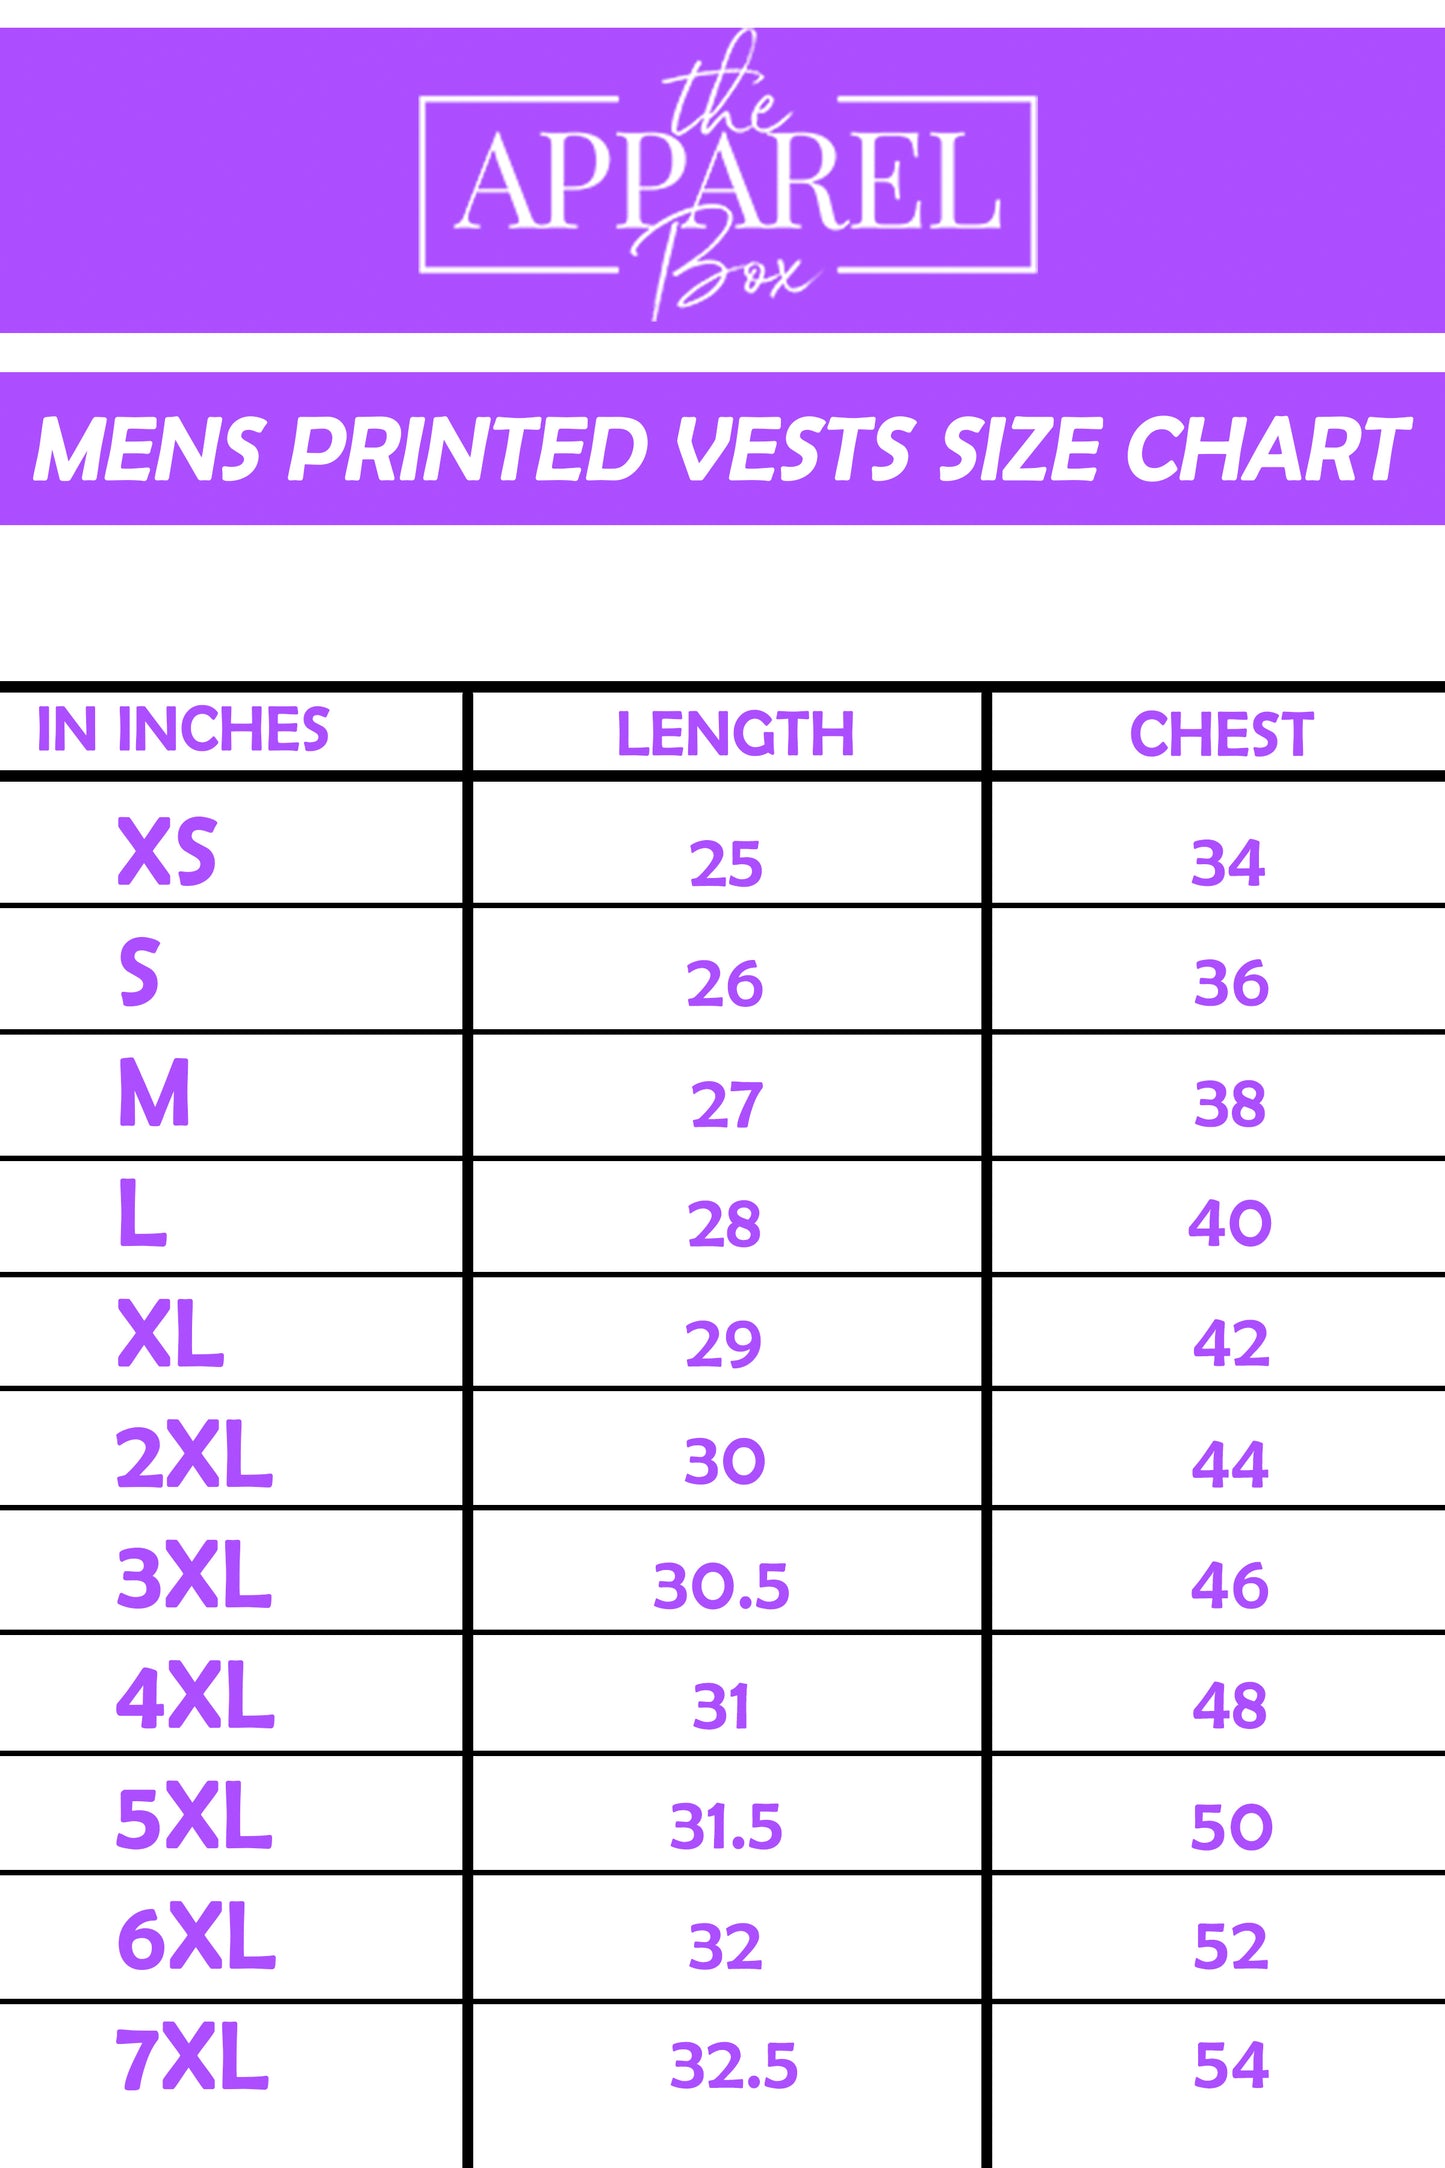 Printed Vest#18